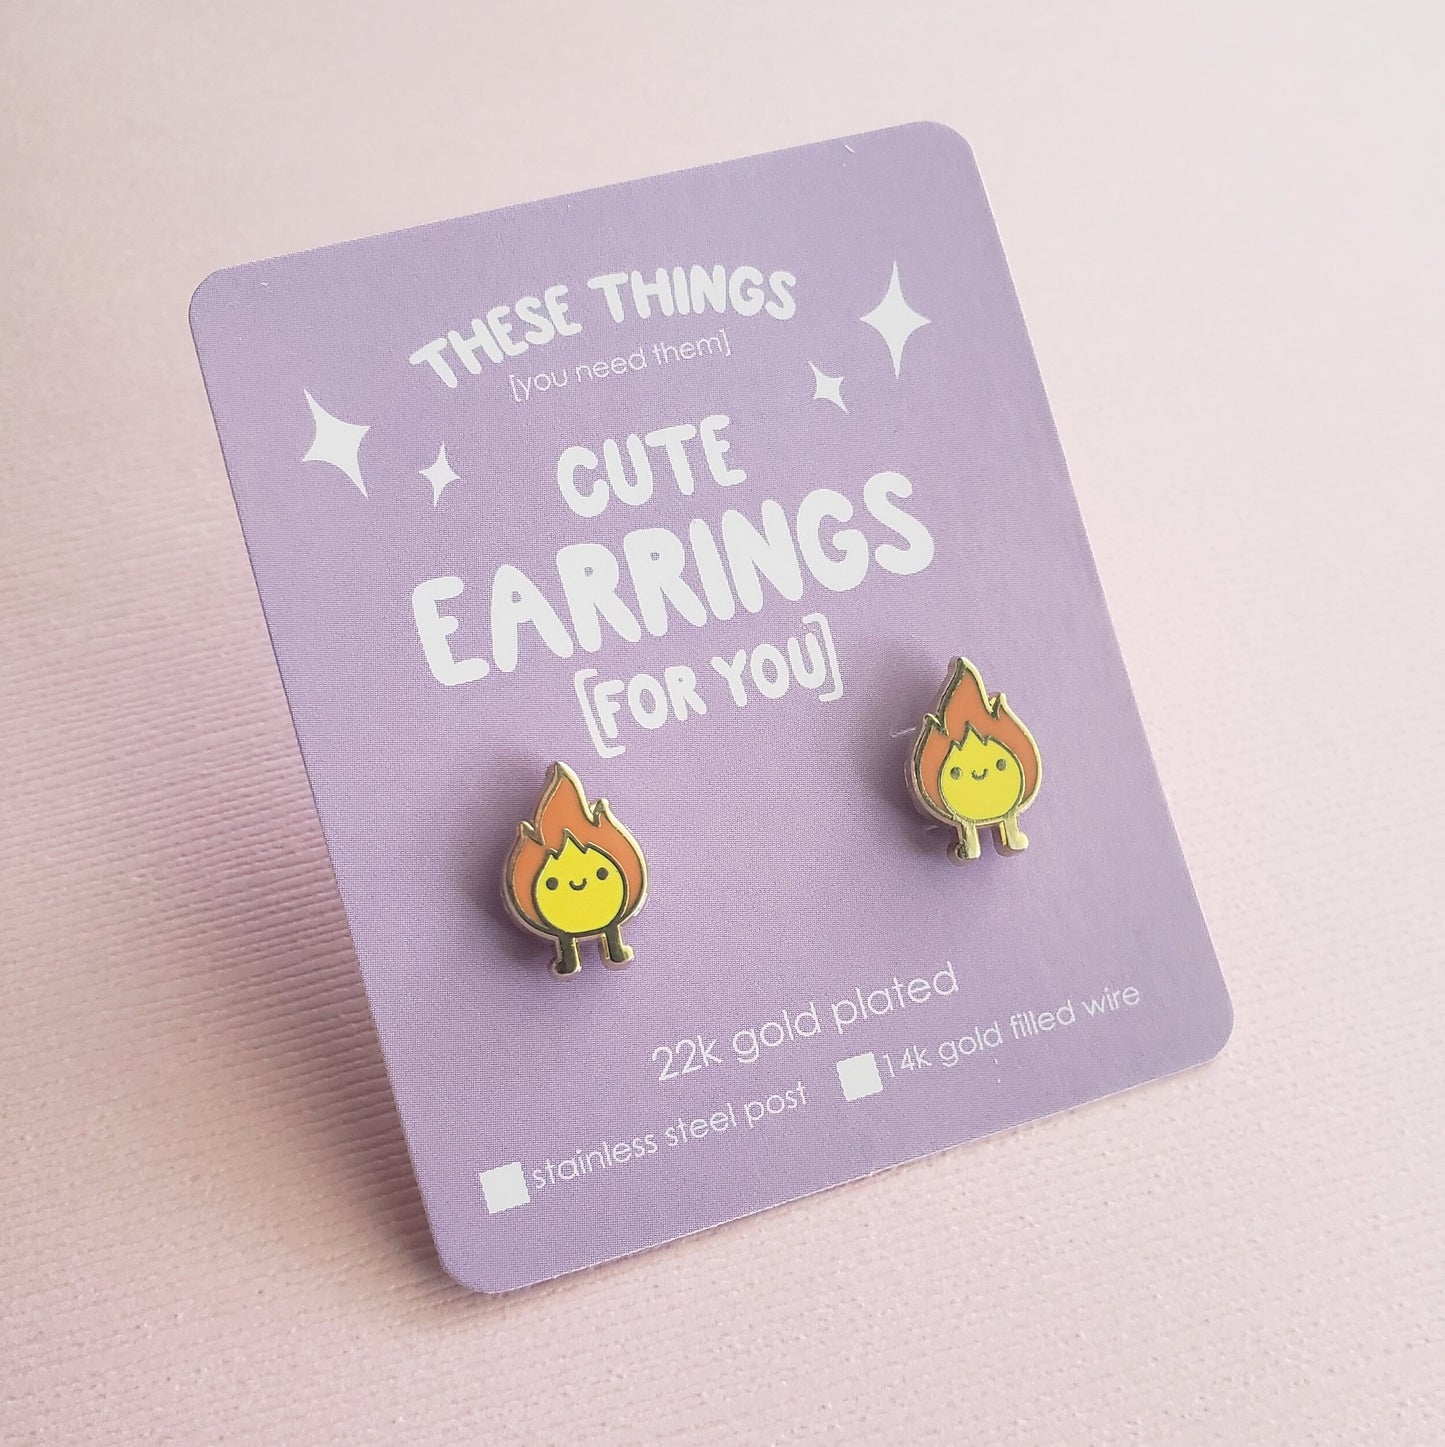 Fire Spirit earrings